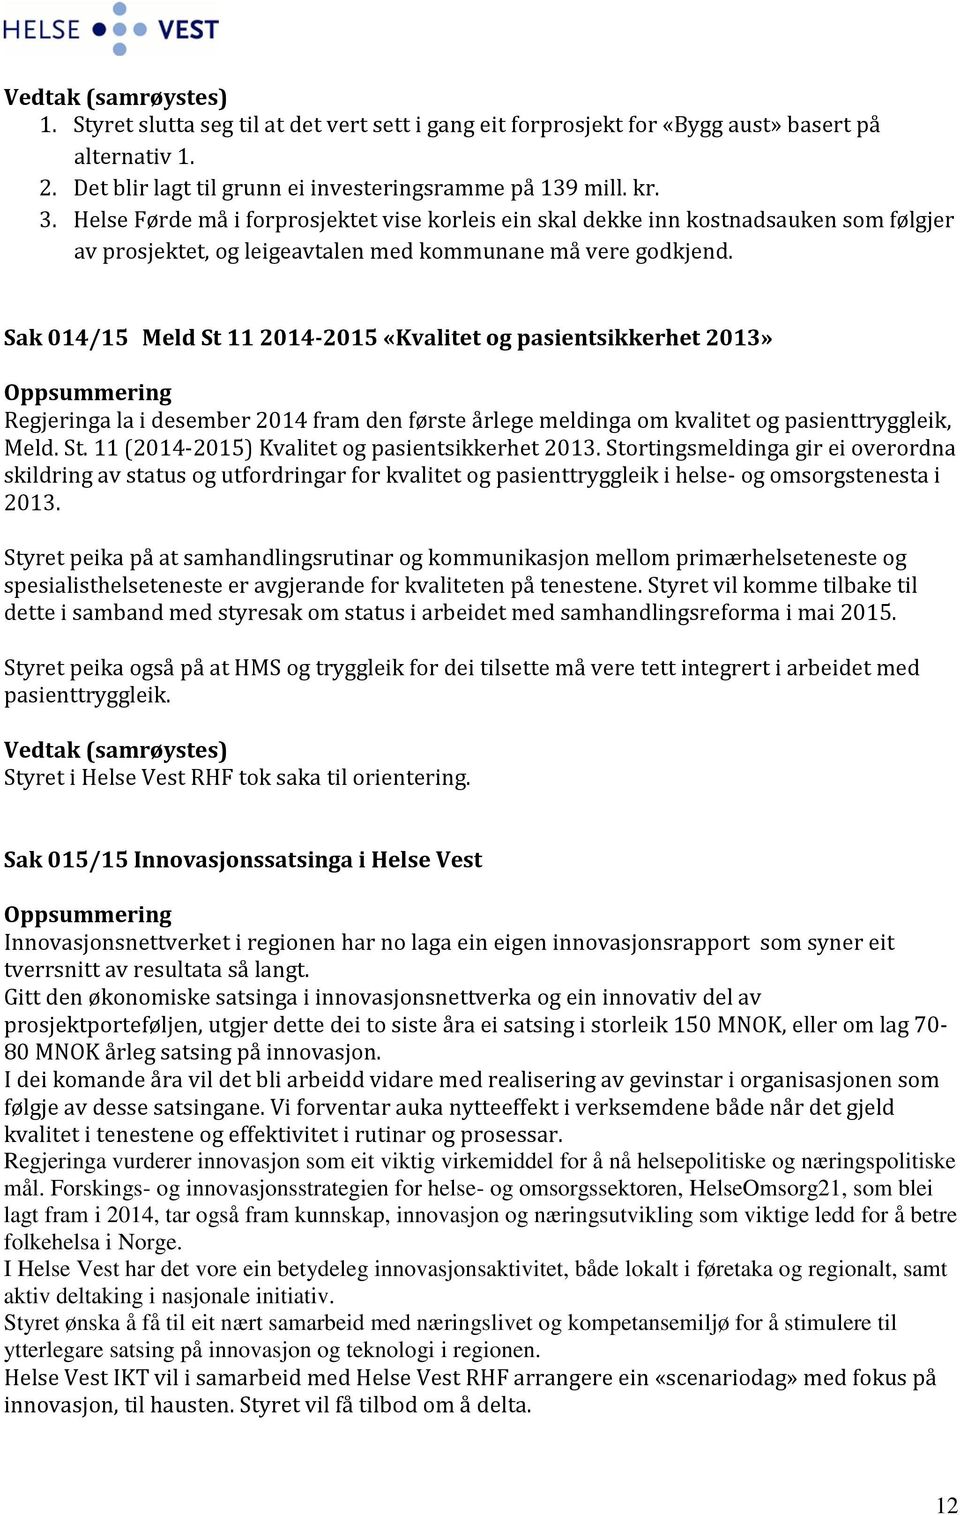 Sak 014/15 Meld St 11 2014-2015 «Kvalitet og pasientsikkerhet 2013» Regjeringa la i desember 2014 fram den første årlege meldinga om kvalitet og pasienttryggleik, Meld. St. 11 (2014-2015) Kvalitet og pasientsikkerhet 2013.